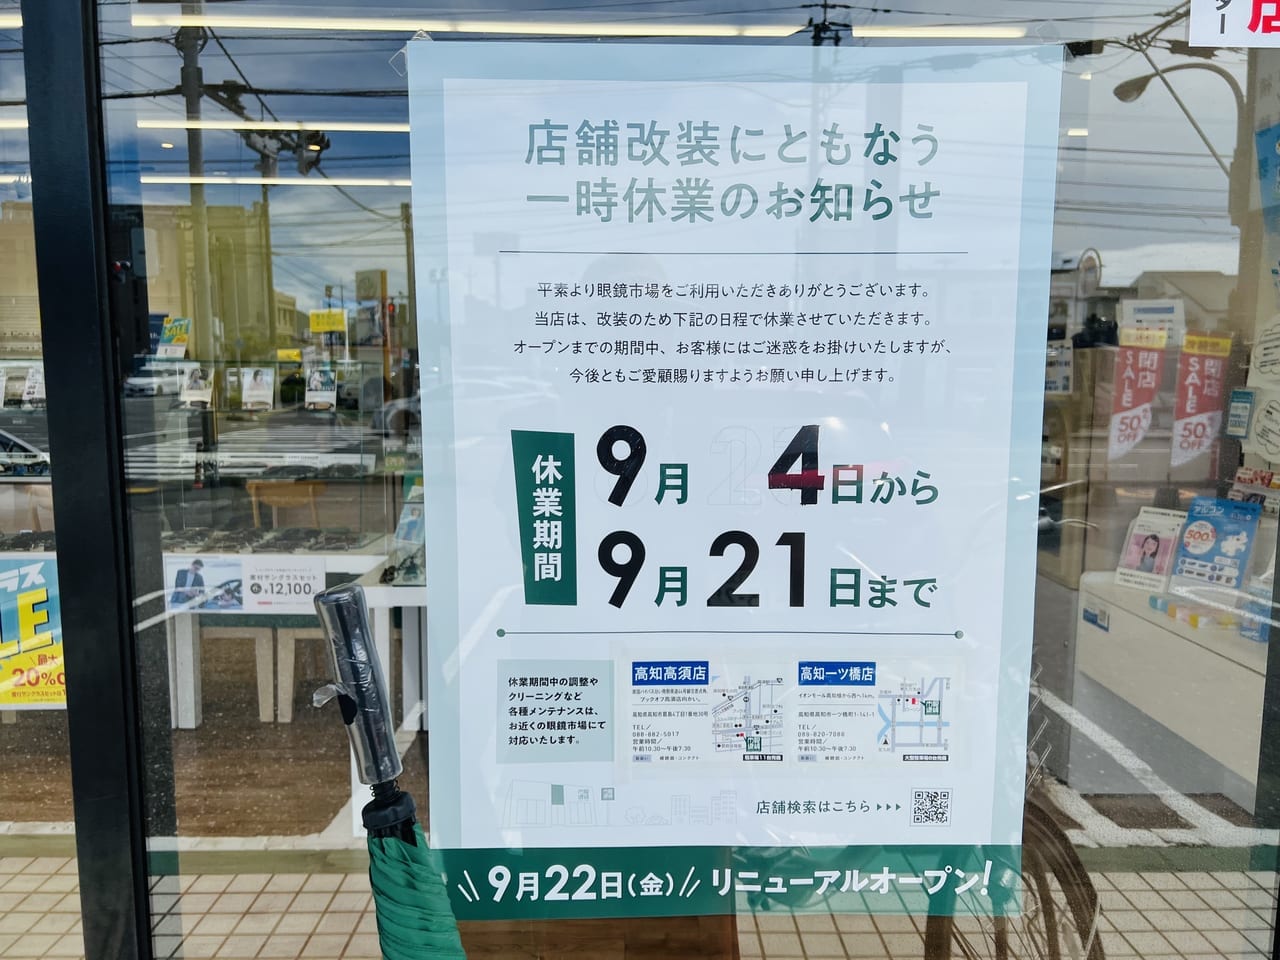 「眼鏡市場 高知北金田店」の一時休業とリニューアルオープンの張り紙